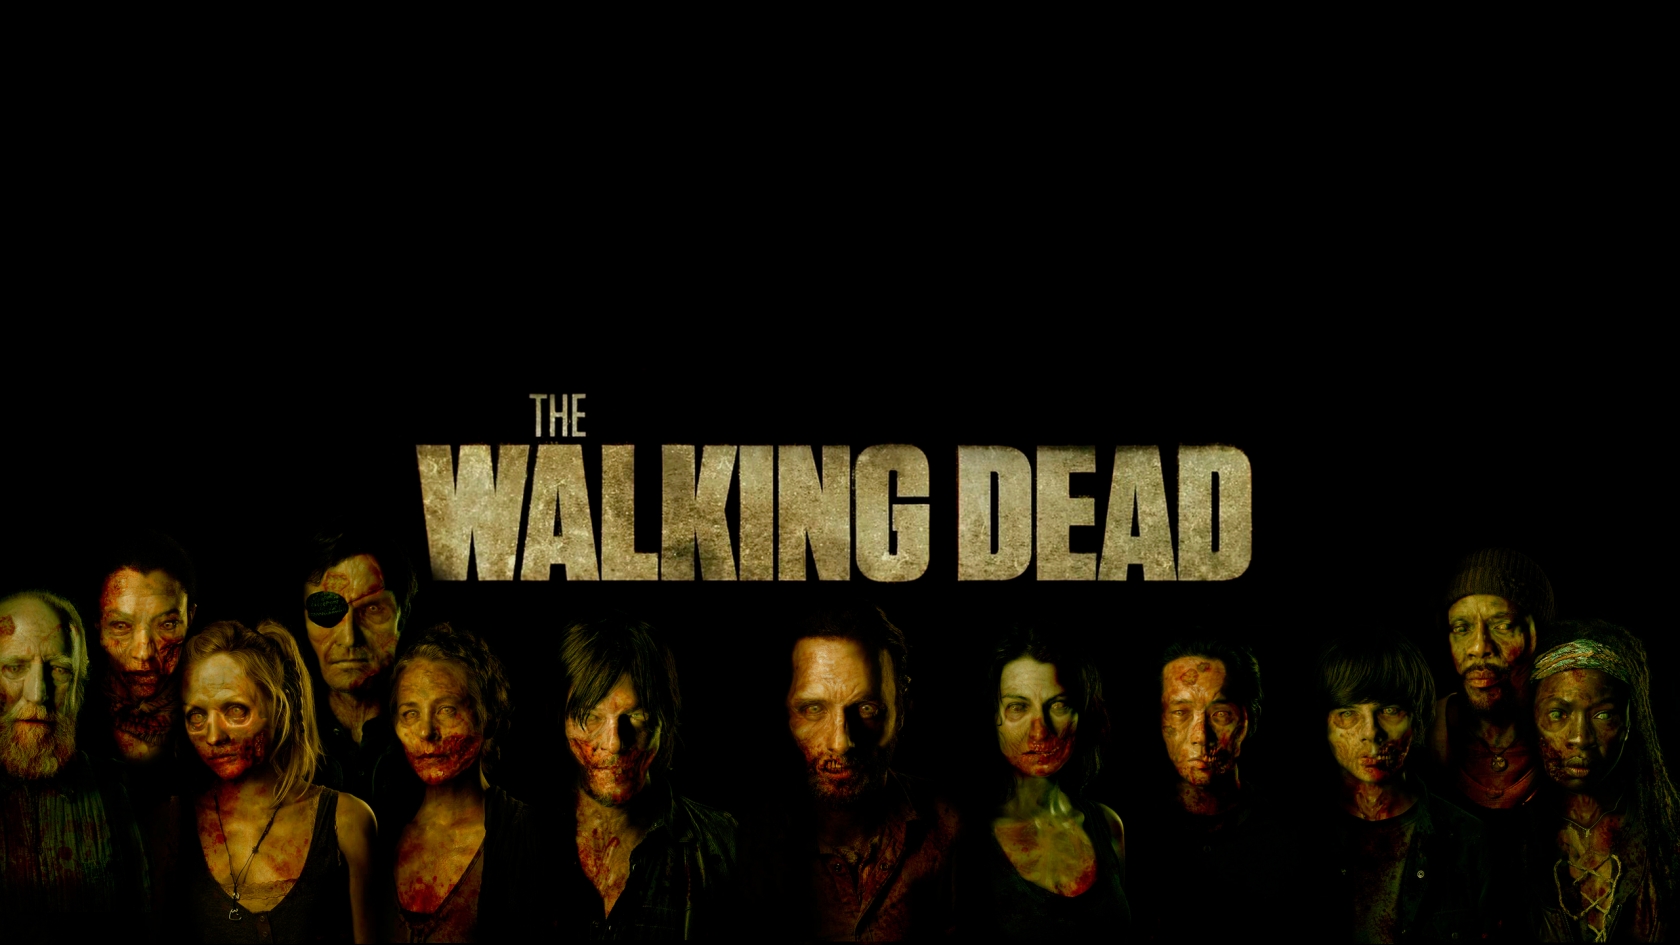 The Walking Dead Poster Art  for 1680 x 945 HDTV resolution